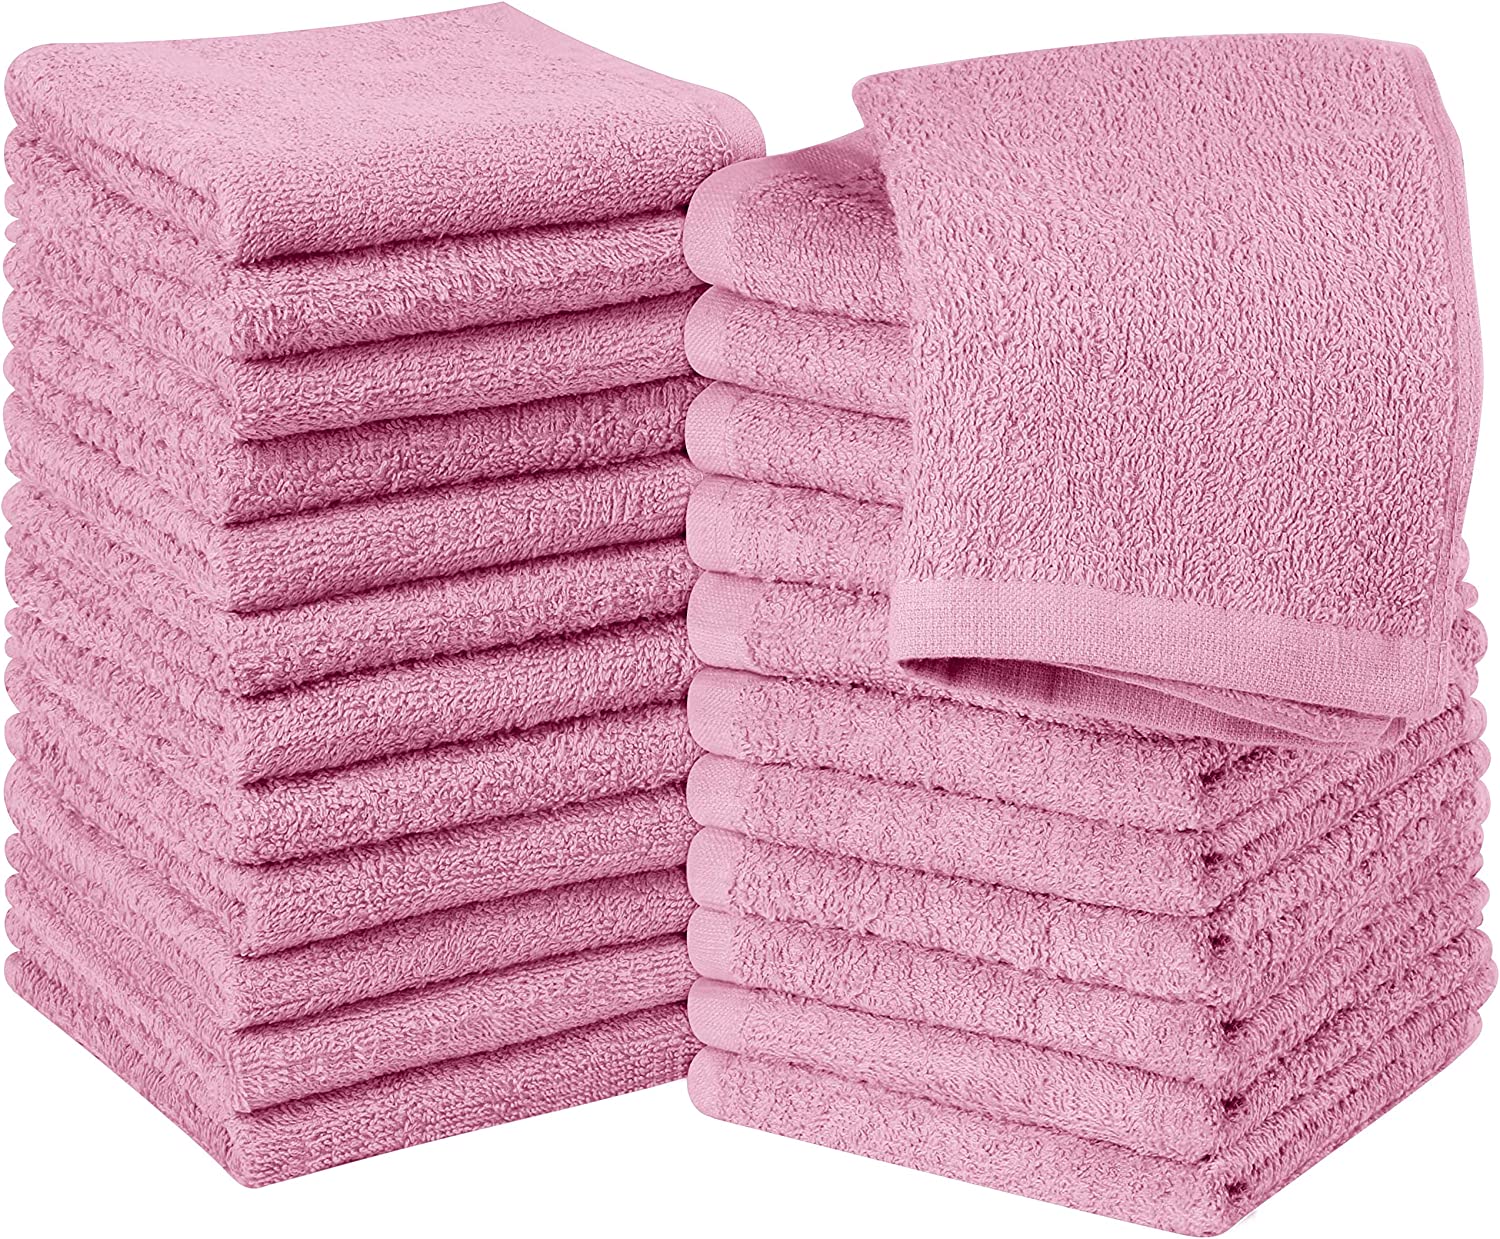 Utopia Towels – Petites Serviettes, débarbouillettes – 30 x 30 cm (24 Paquets, Rose)